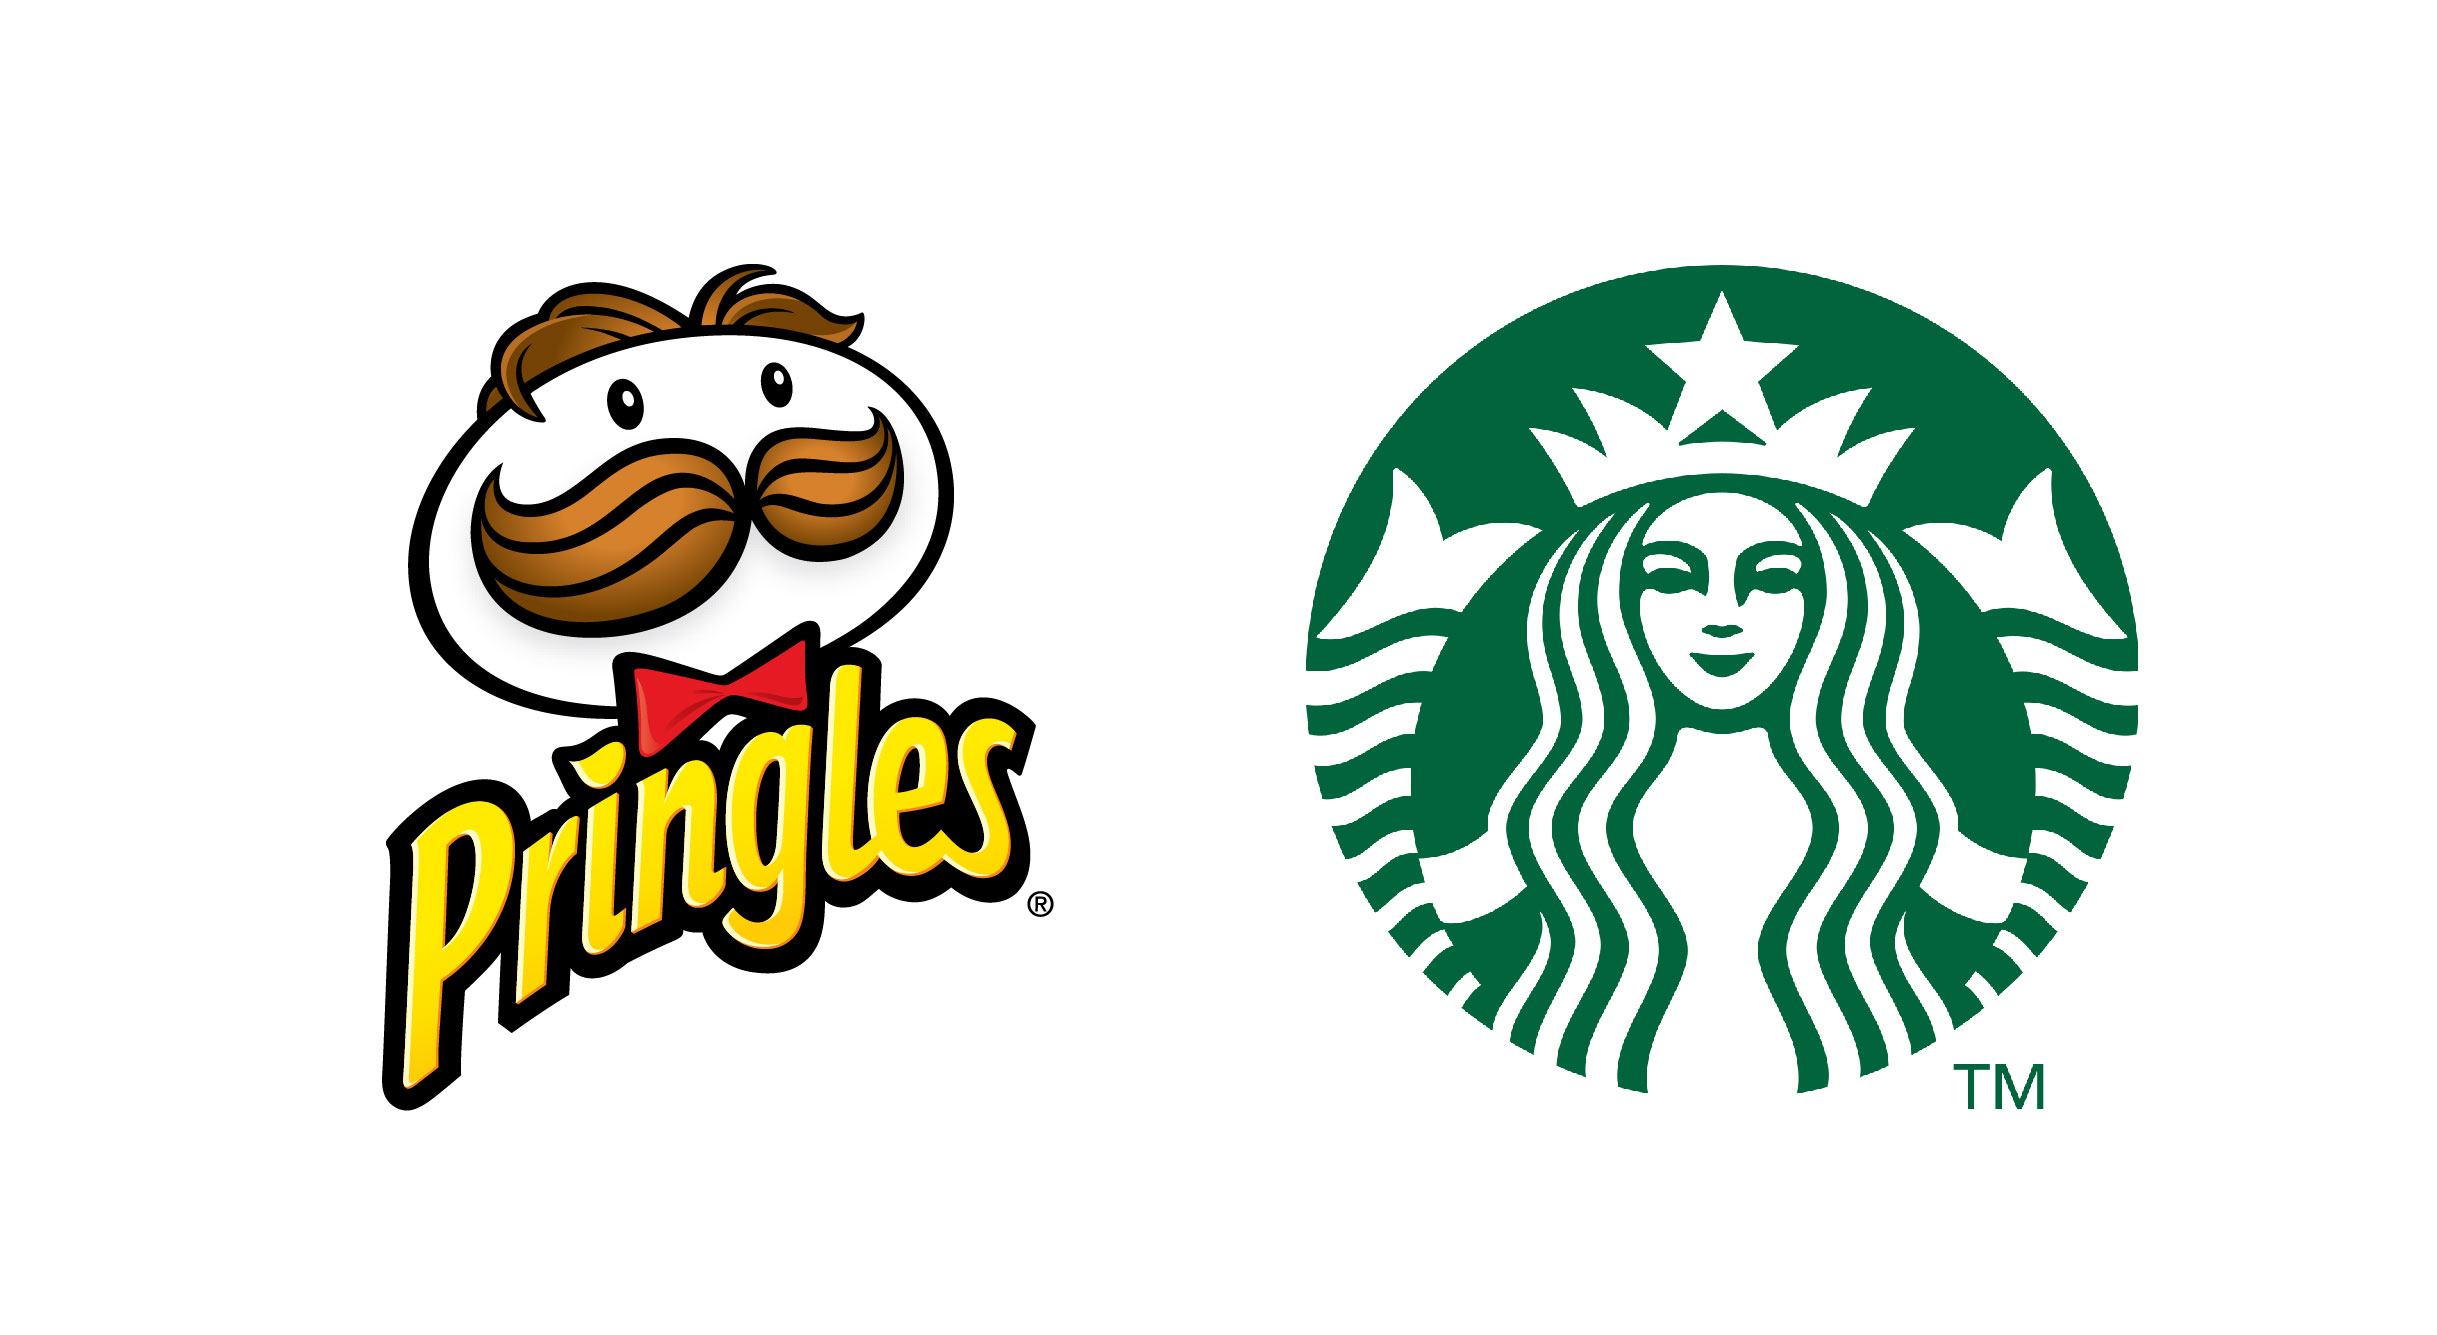 Maskottchen Logos Pringles und Starbucks